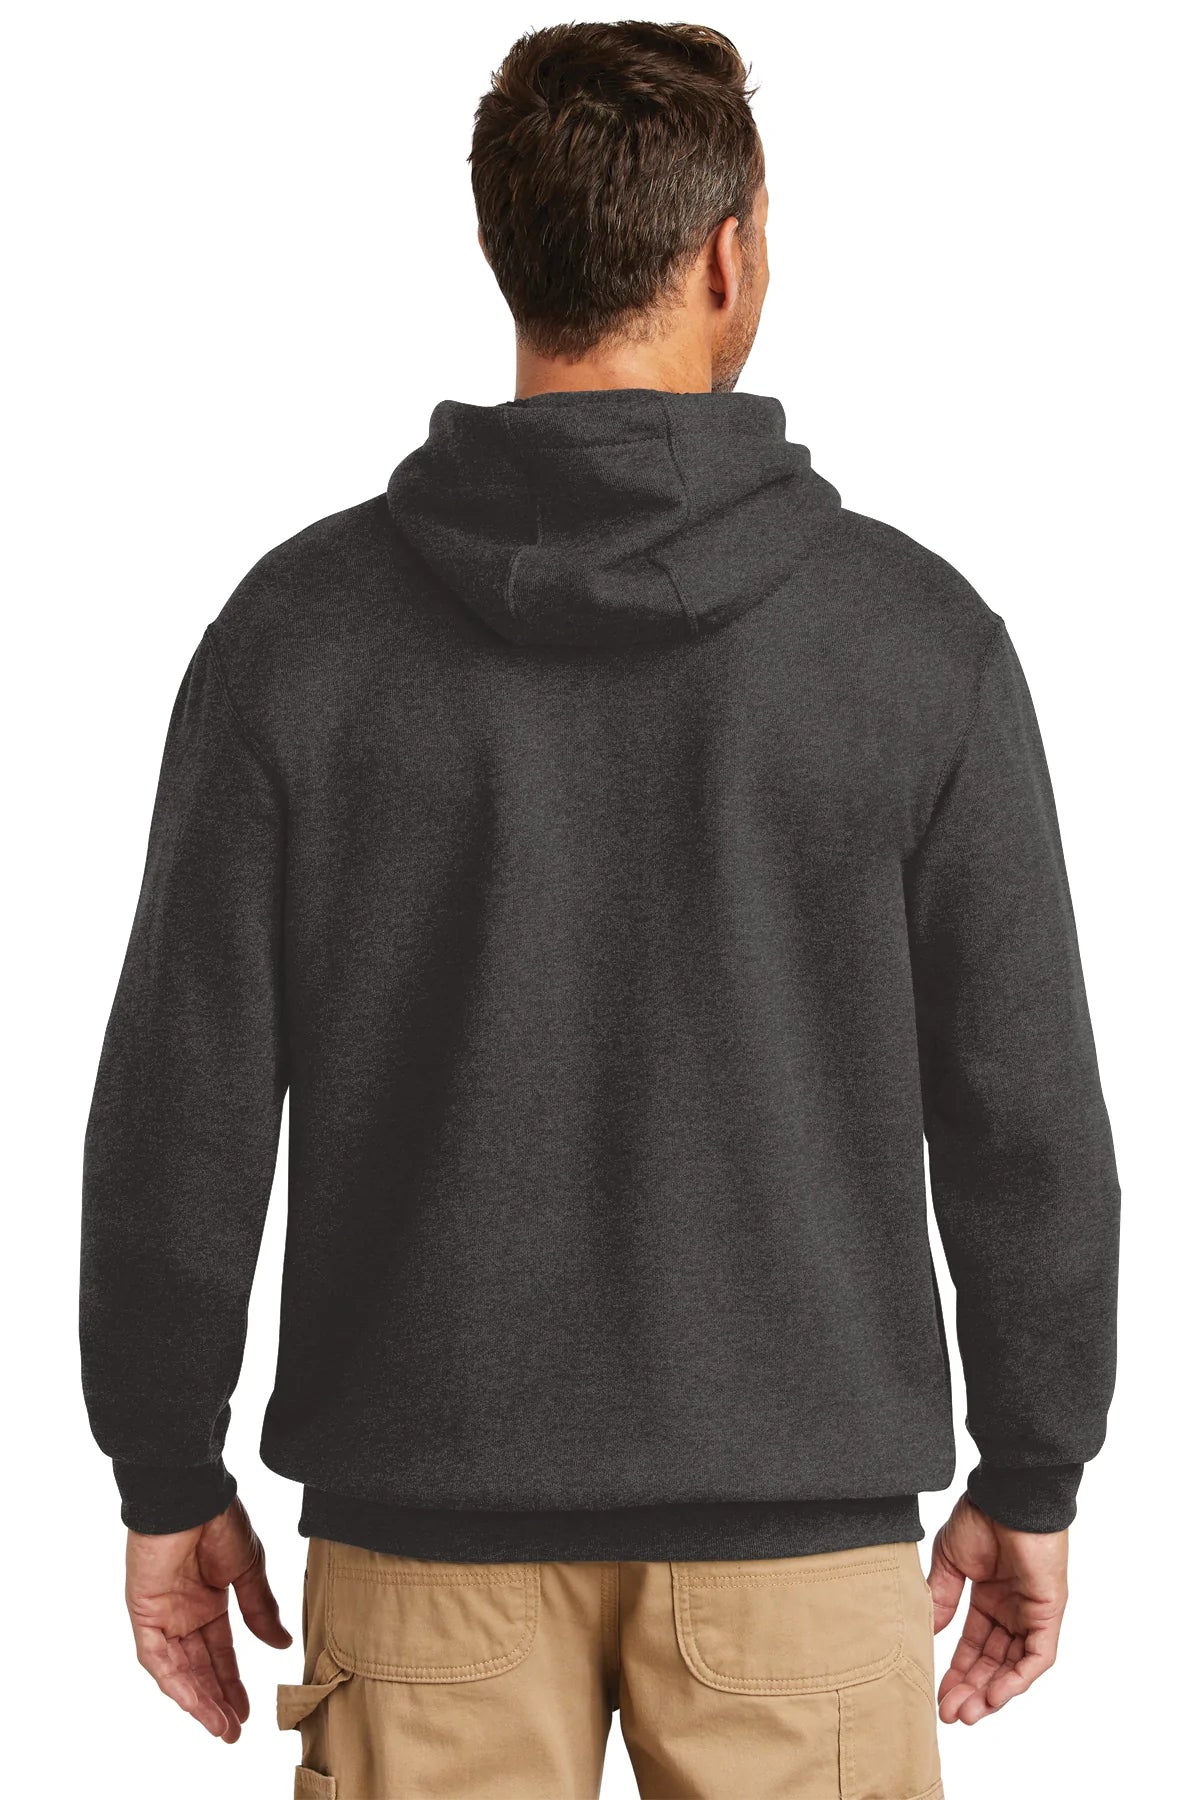 Carhartt Tall Hooded Custom Sweatshirts, Carbon Heather